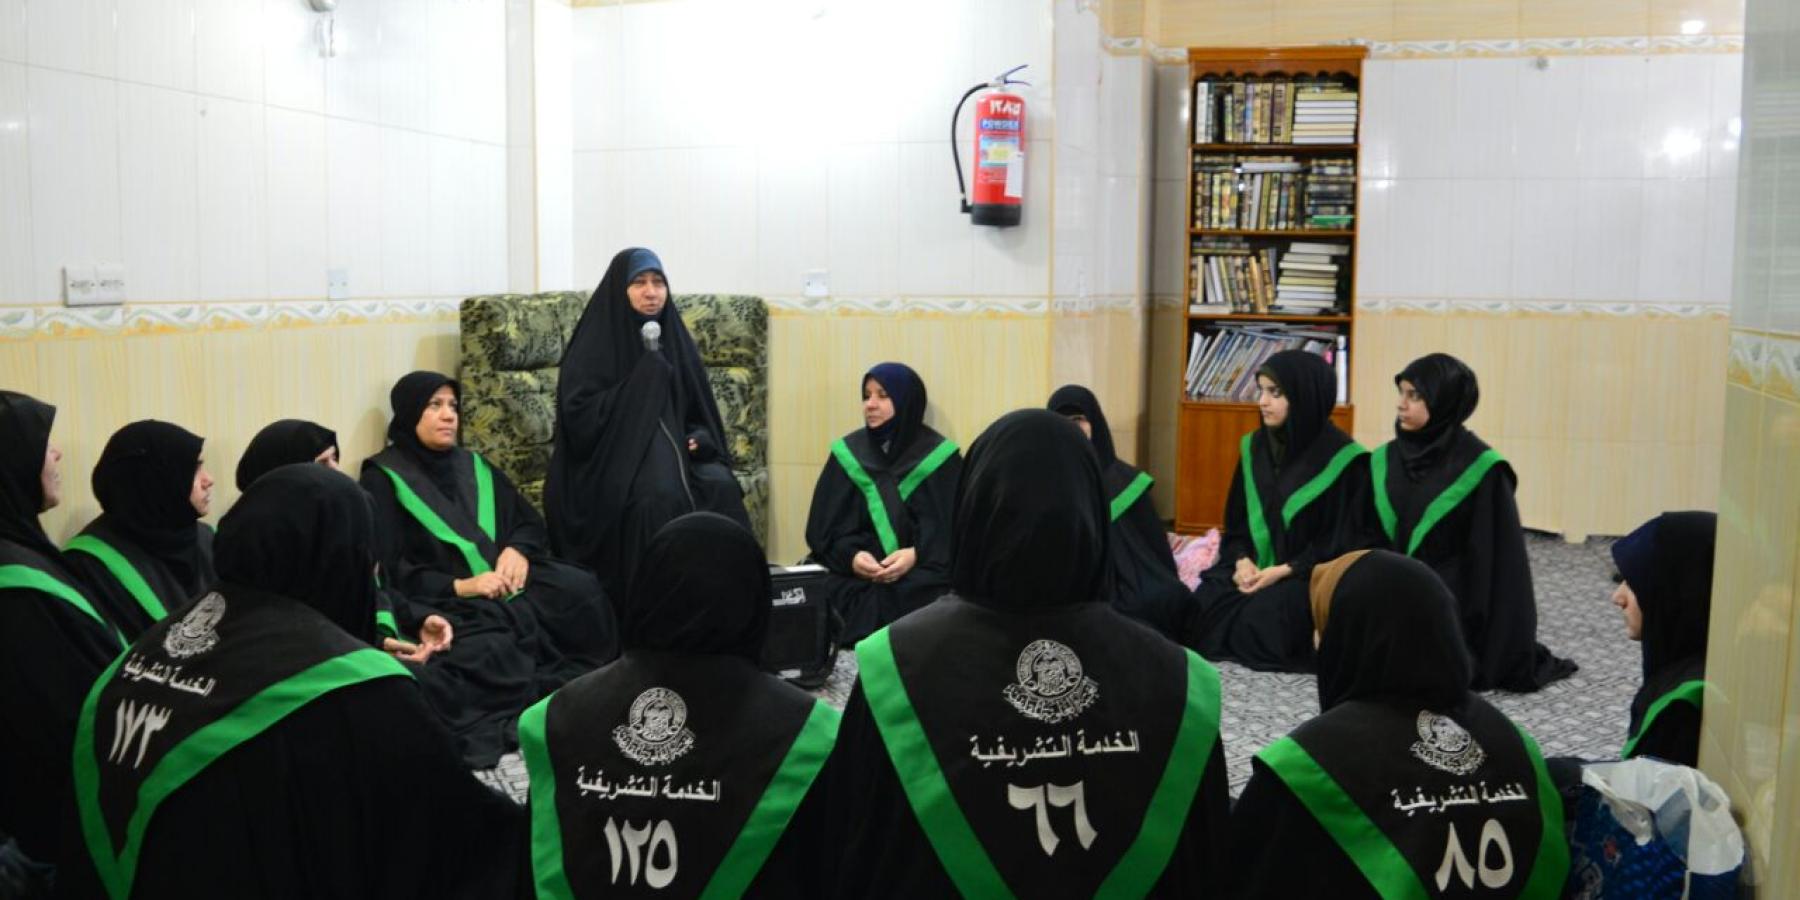 قسم الشؤون النسوية في العتبة العلوية: مائة متطوعة تشرفن بالمشاركة في تقديم الخدمات للزائرات خلال شهر رمضان المبارك